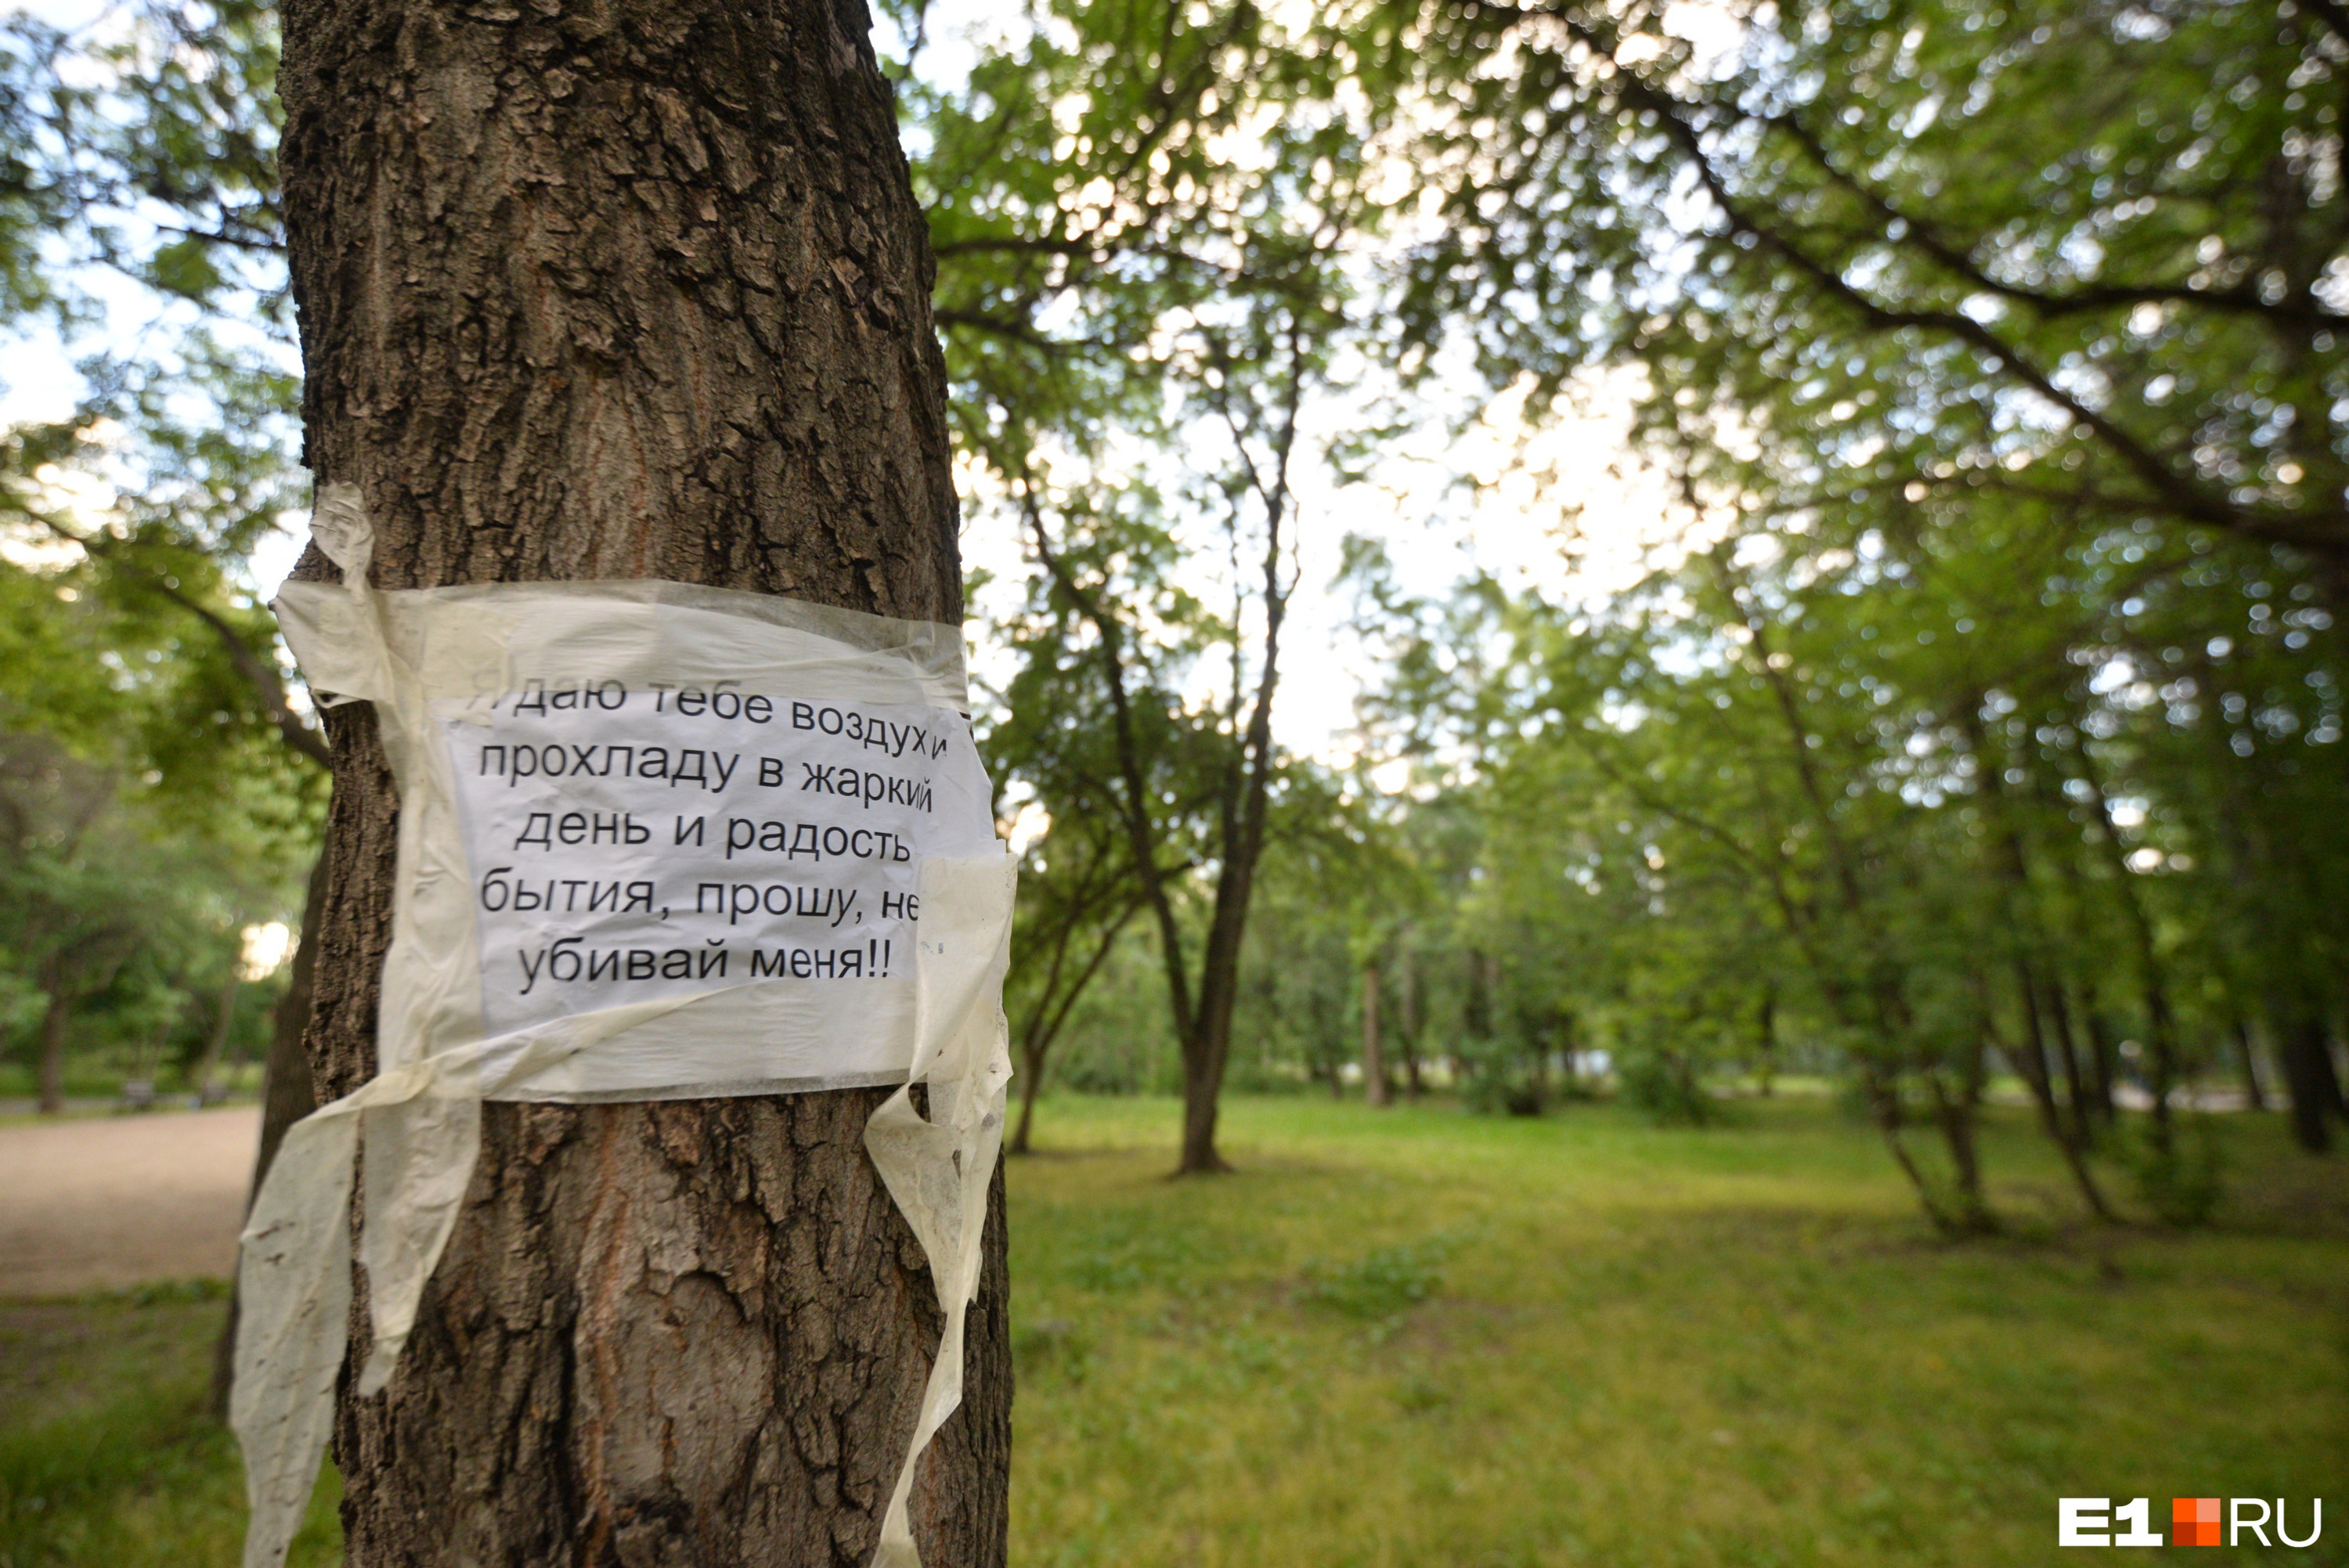 Активисты накануне расклеили в парке объявления, призывающие не убивать деревья